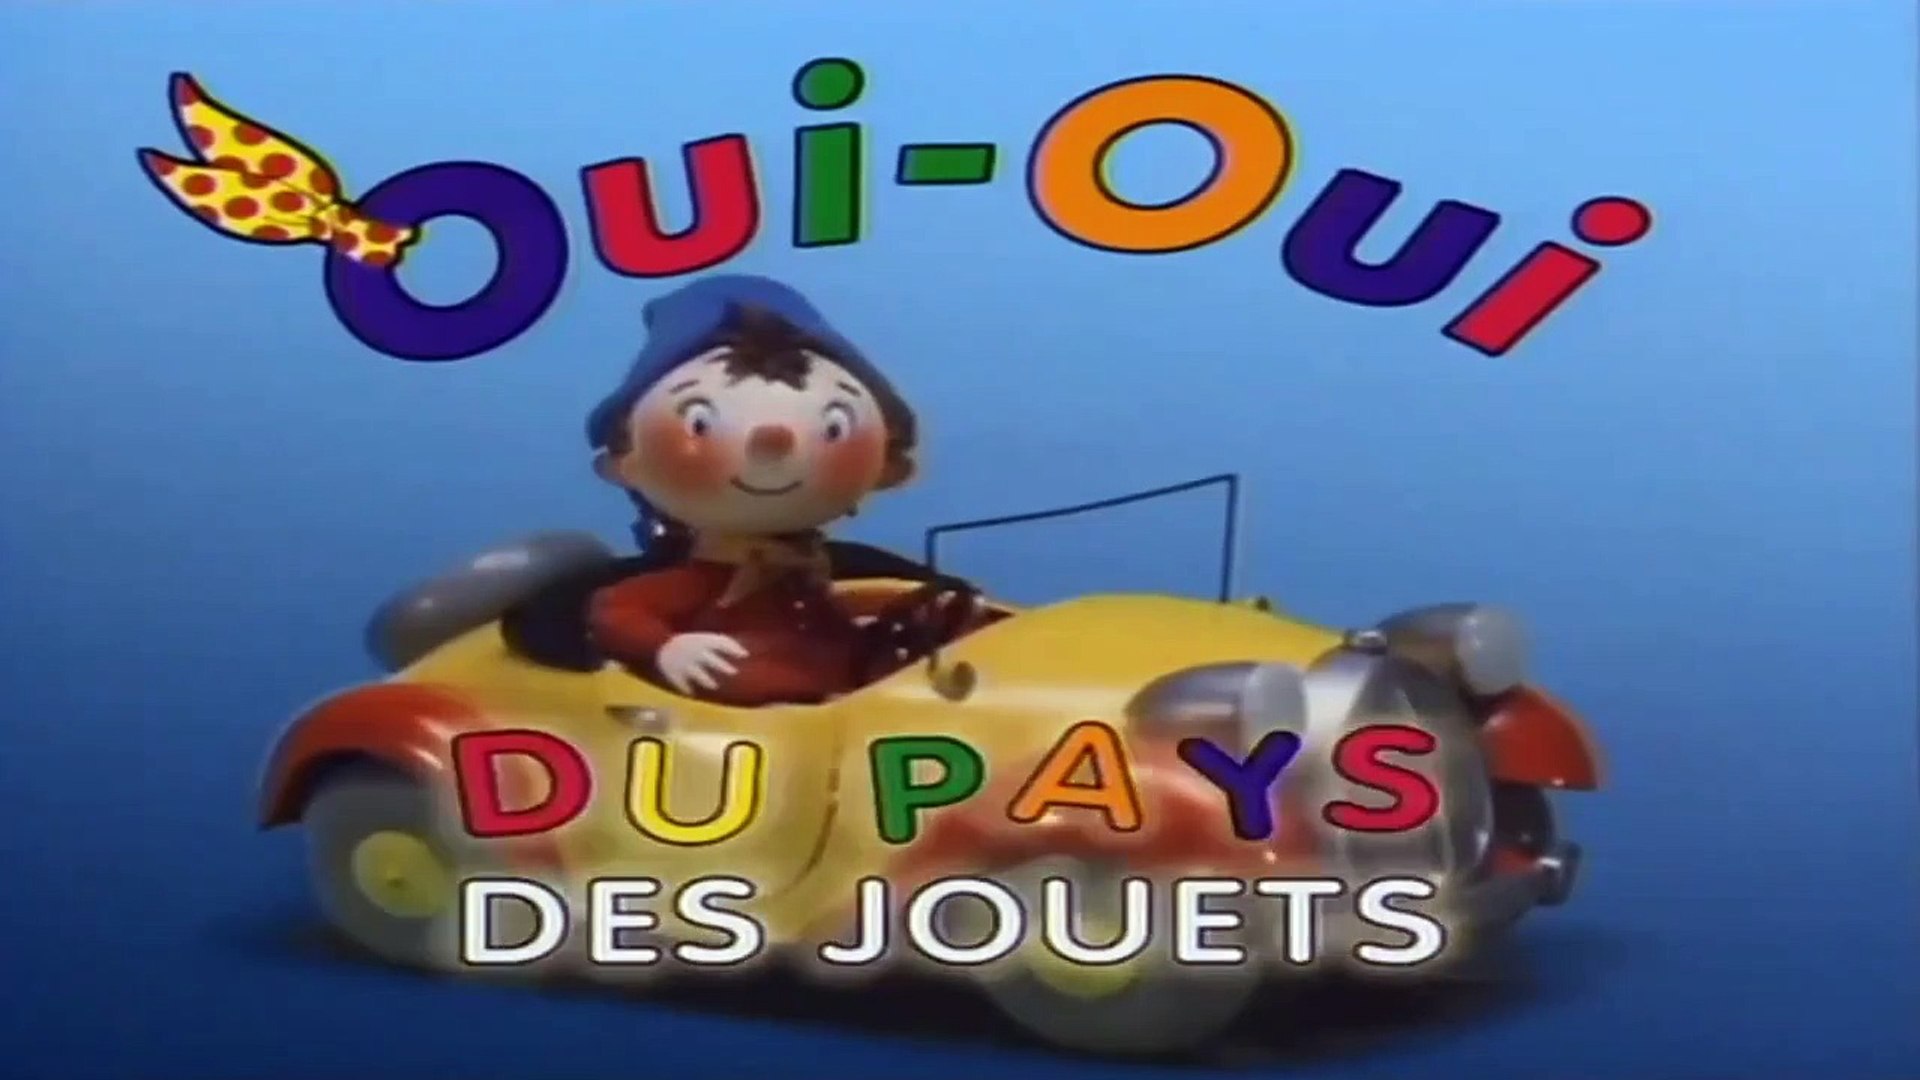 Oui-Oui du pays des jouets, show, 1992